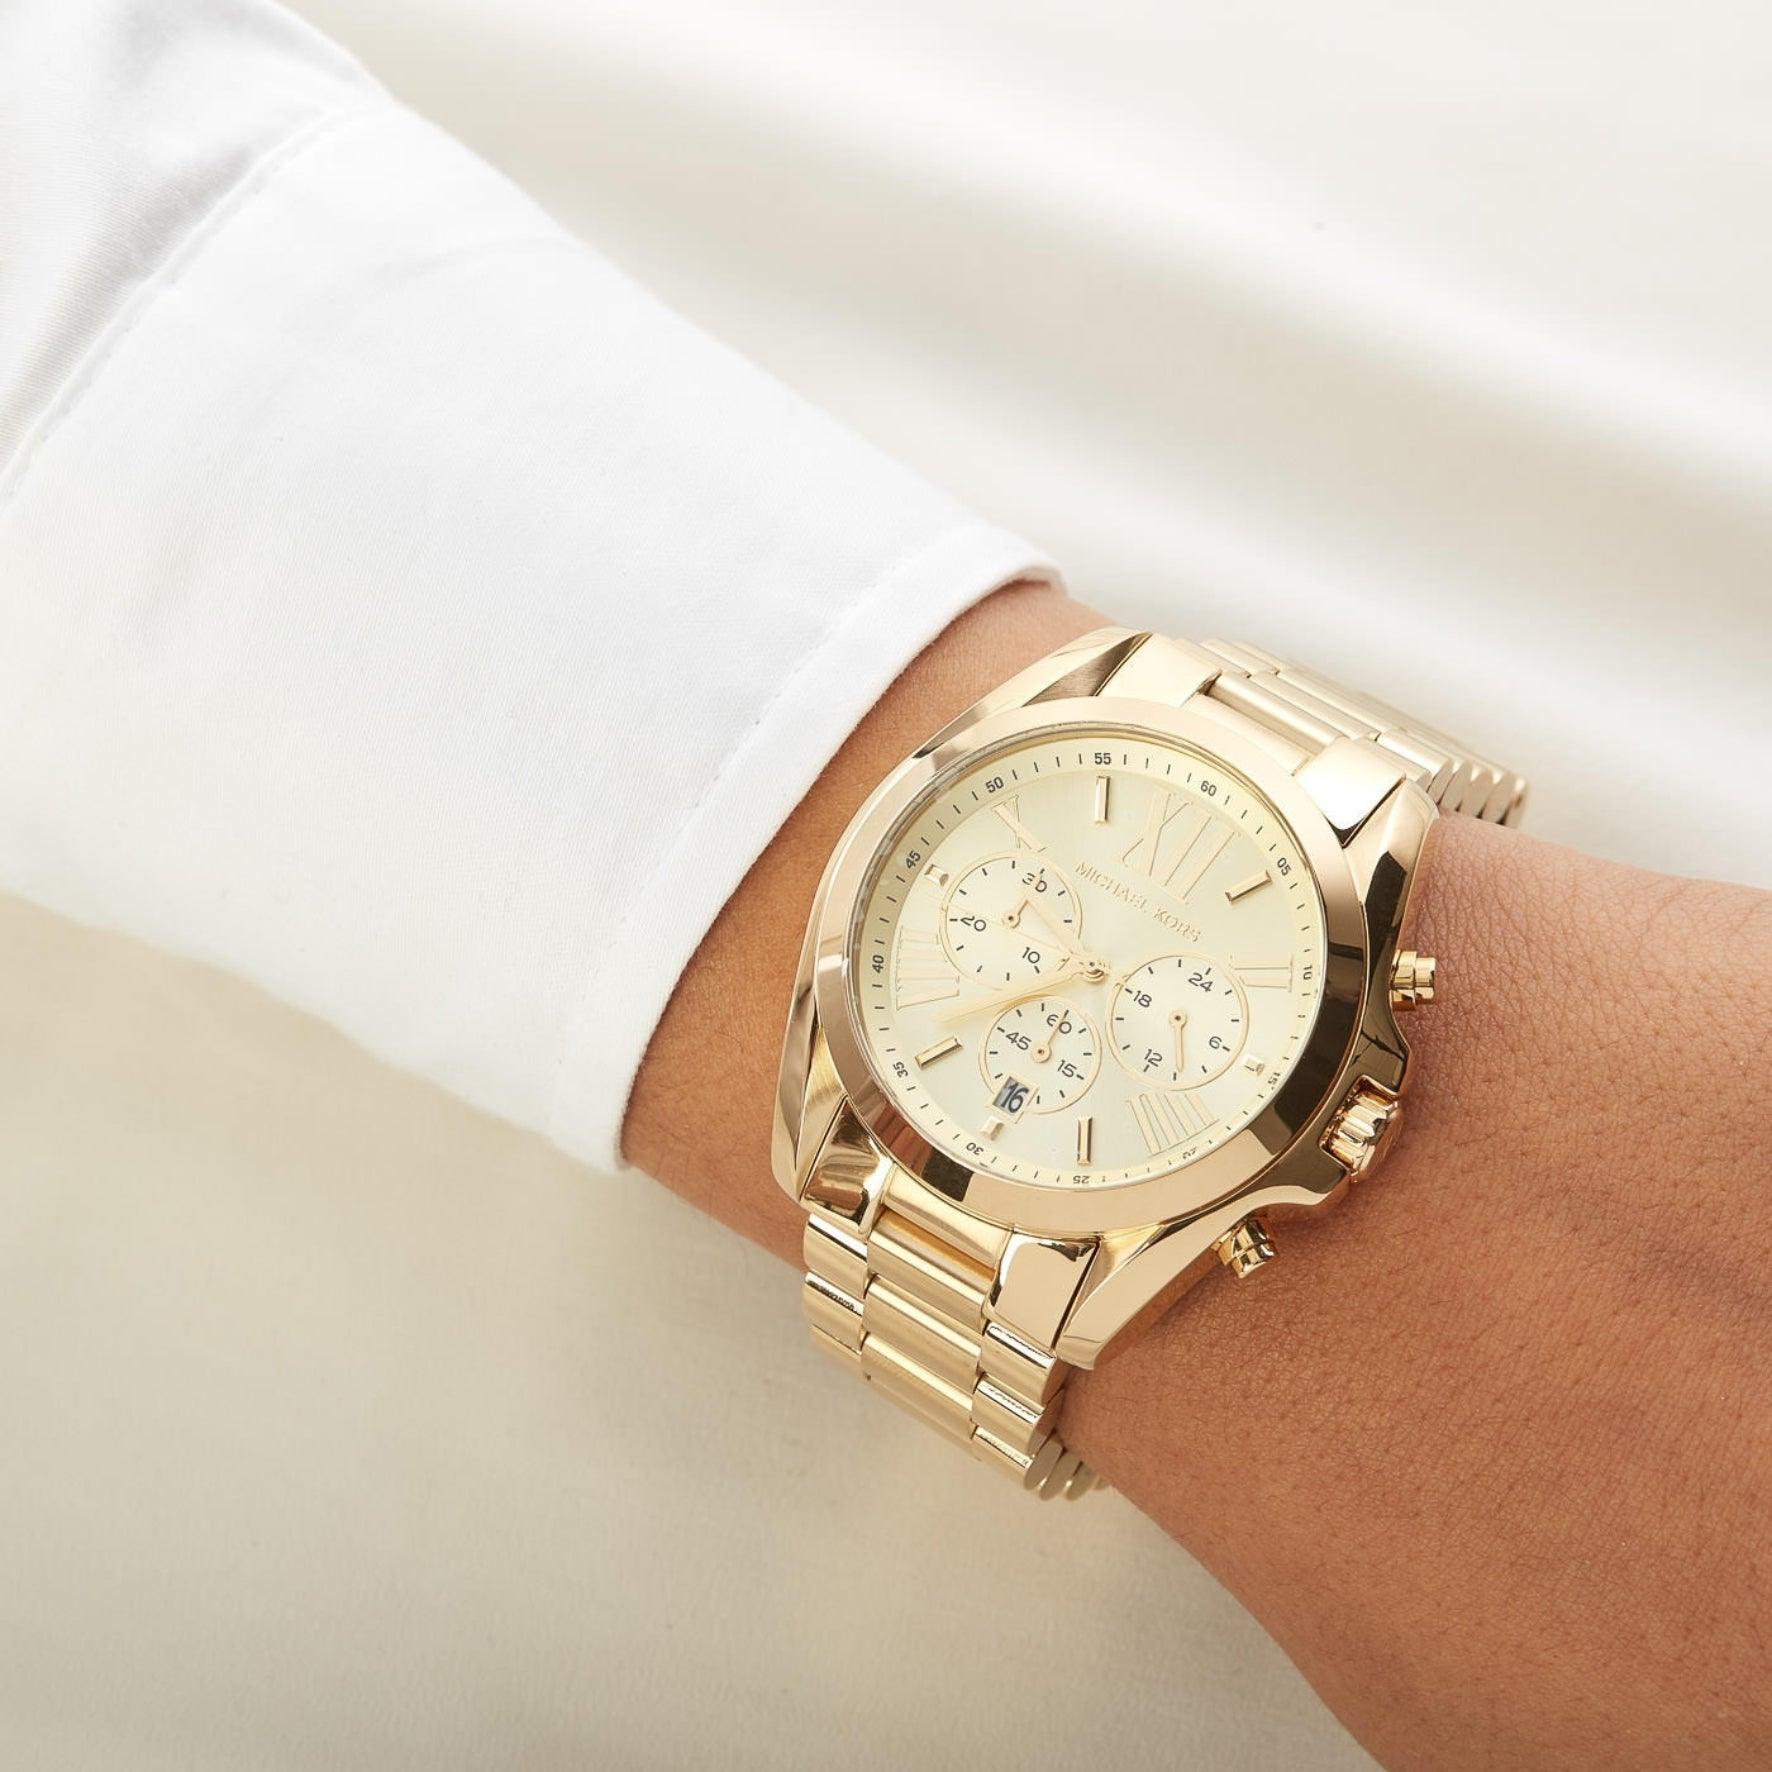 Γυναικείο ρολόι Michael Kors Bradshaw MK5605 με χρονογράφο, χρυσό μπρασελέ από ανοξείδωτο ατσάλι και κάσα σε στρογγυλό σχήμα.